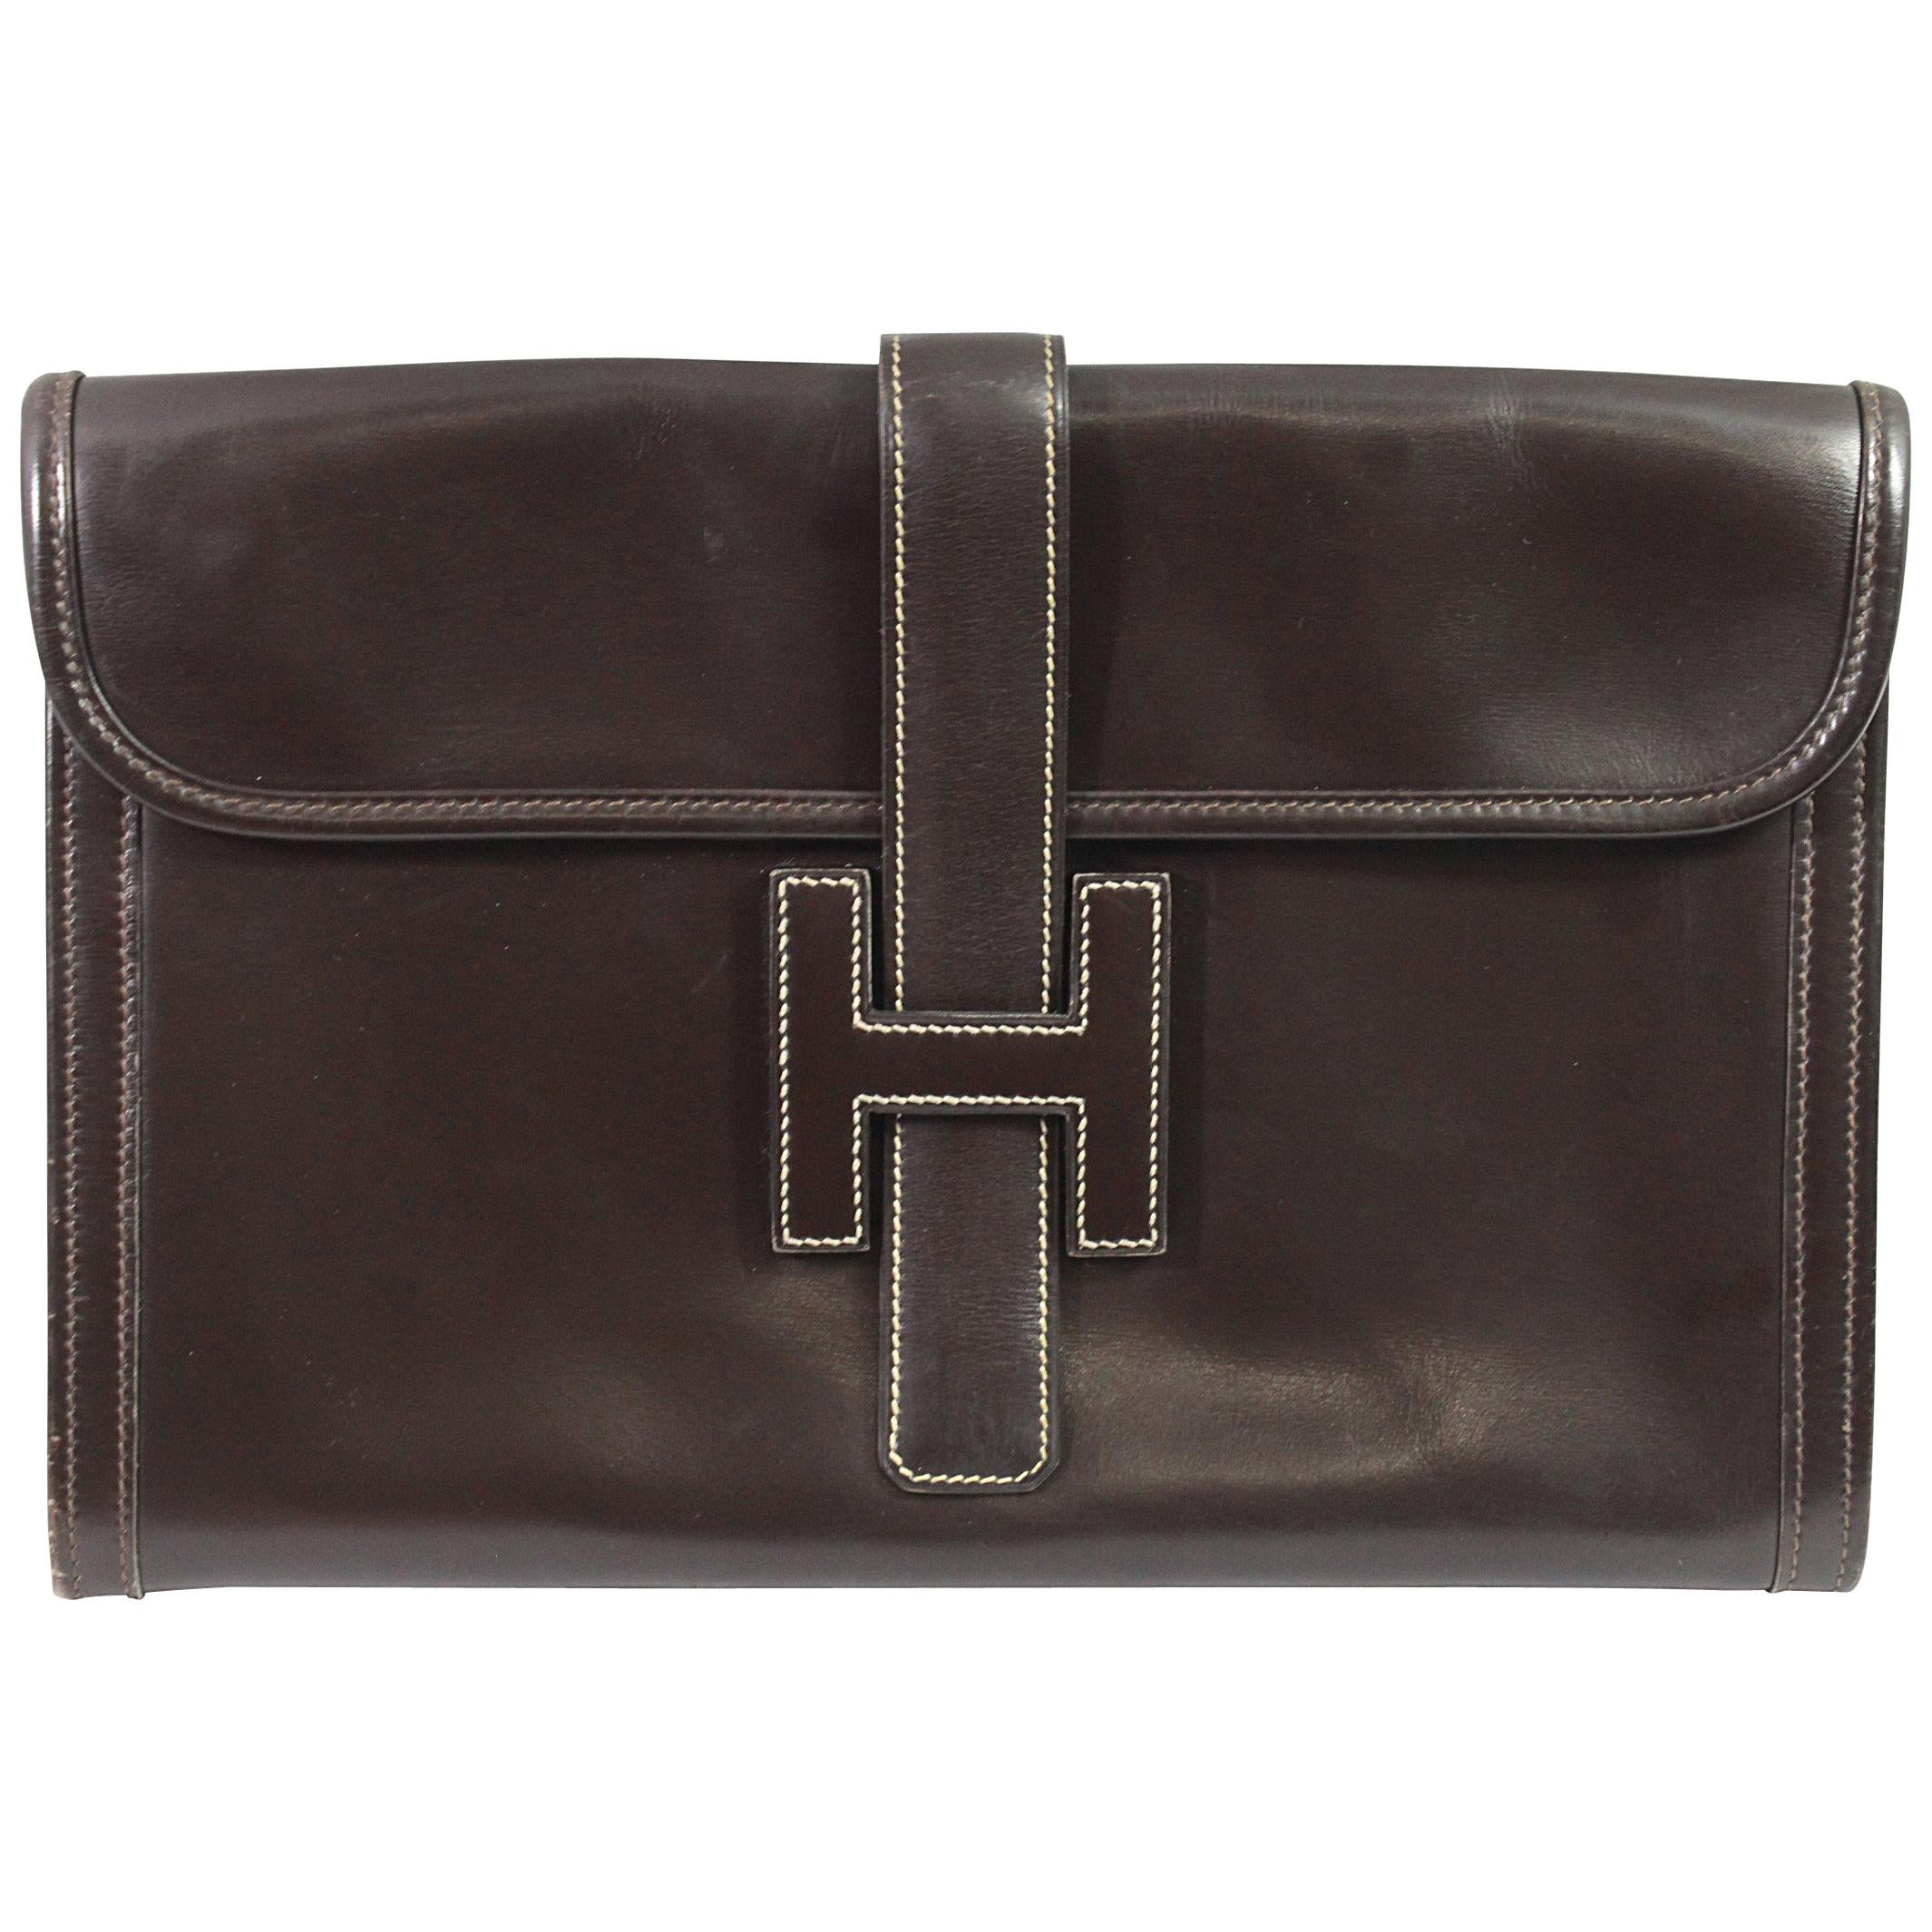 1981 Vintage Hermes Jige GM Clutch in Brown Dark Box Leather